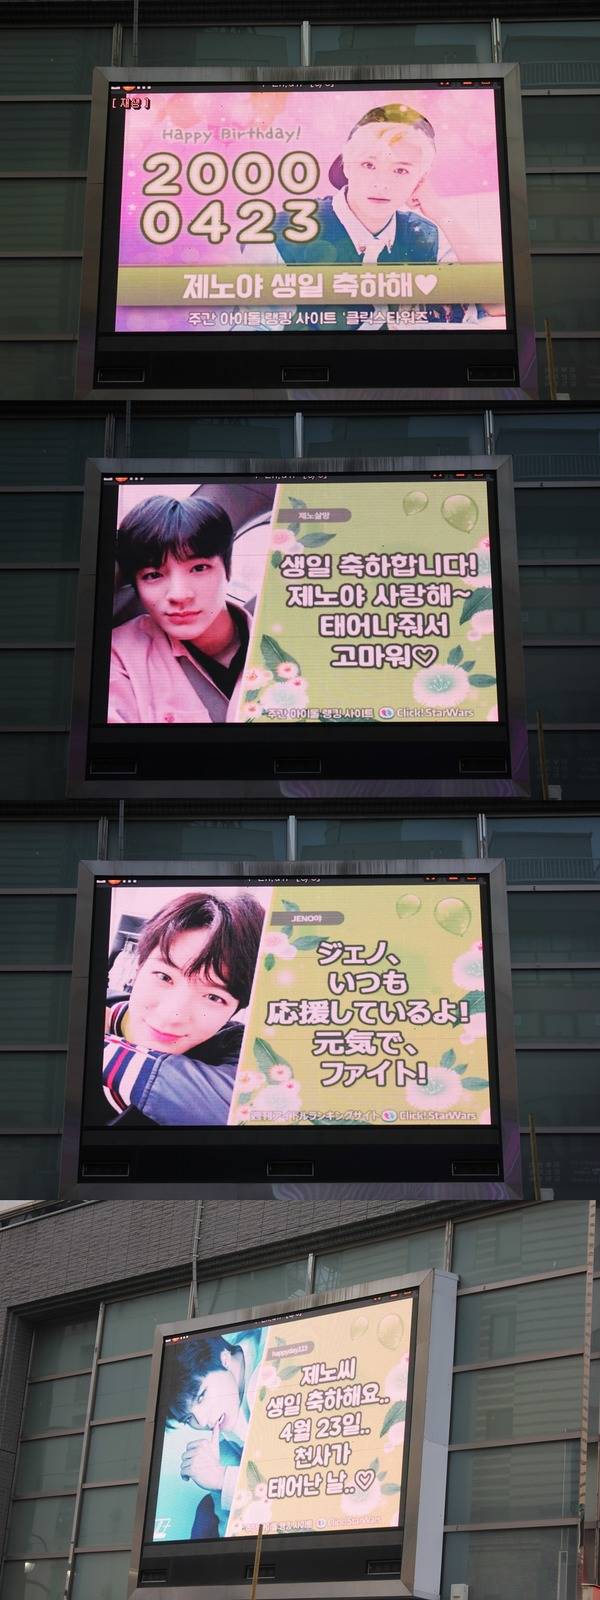 제노야, 생일 축하해 23일 그룹 NCT 제노의 생일 축하 영상이 서대문역에 위치한 전광판에서 상영 중이다. /클릭스타워즈